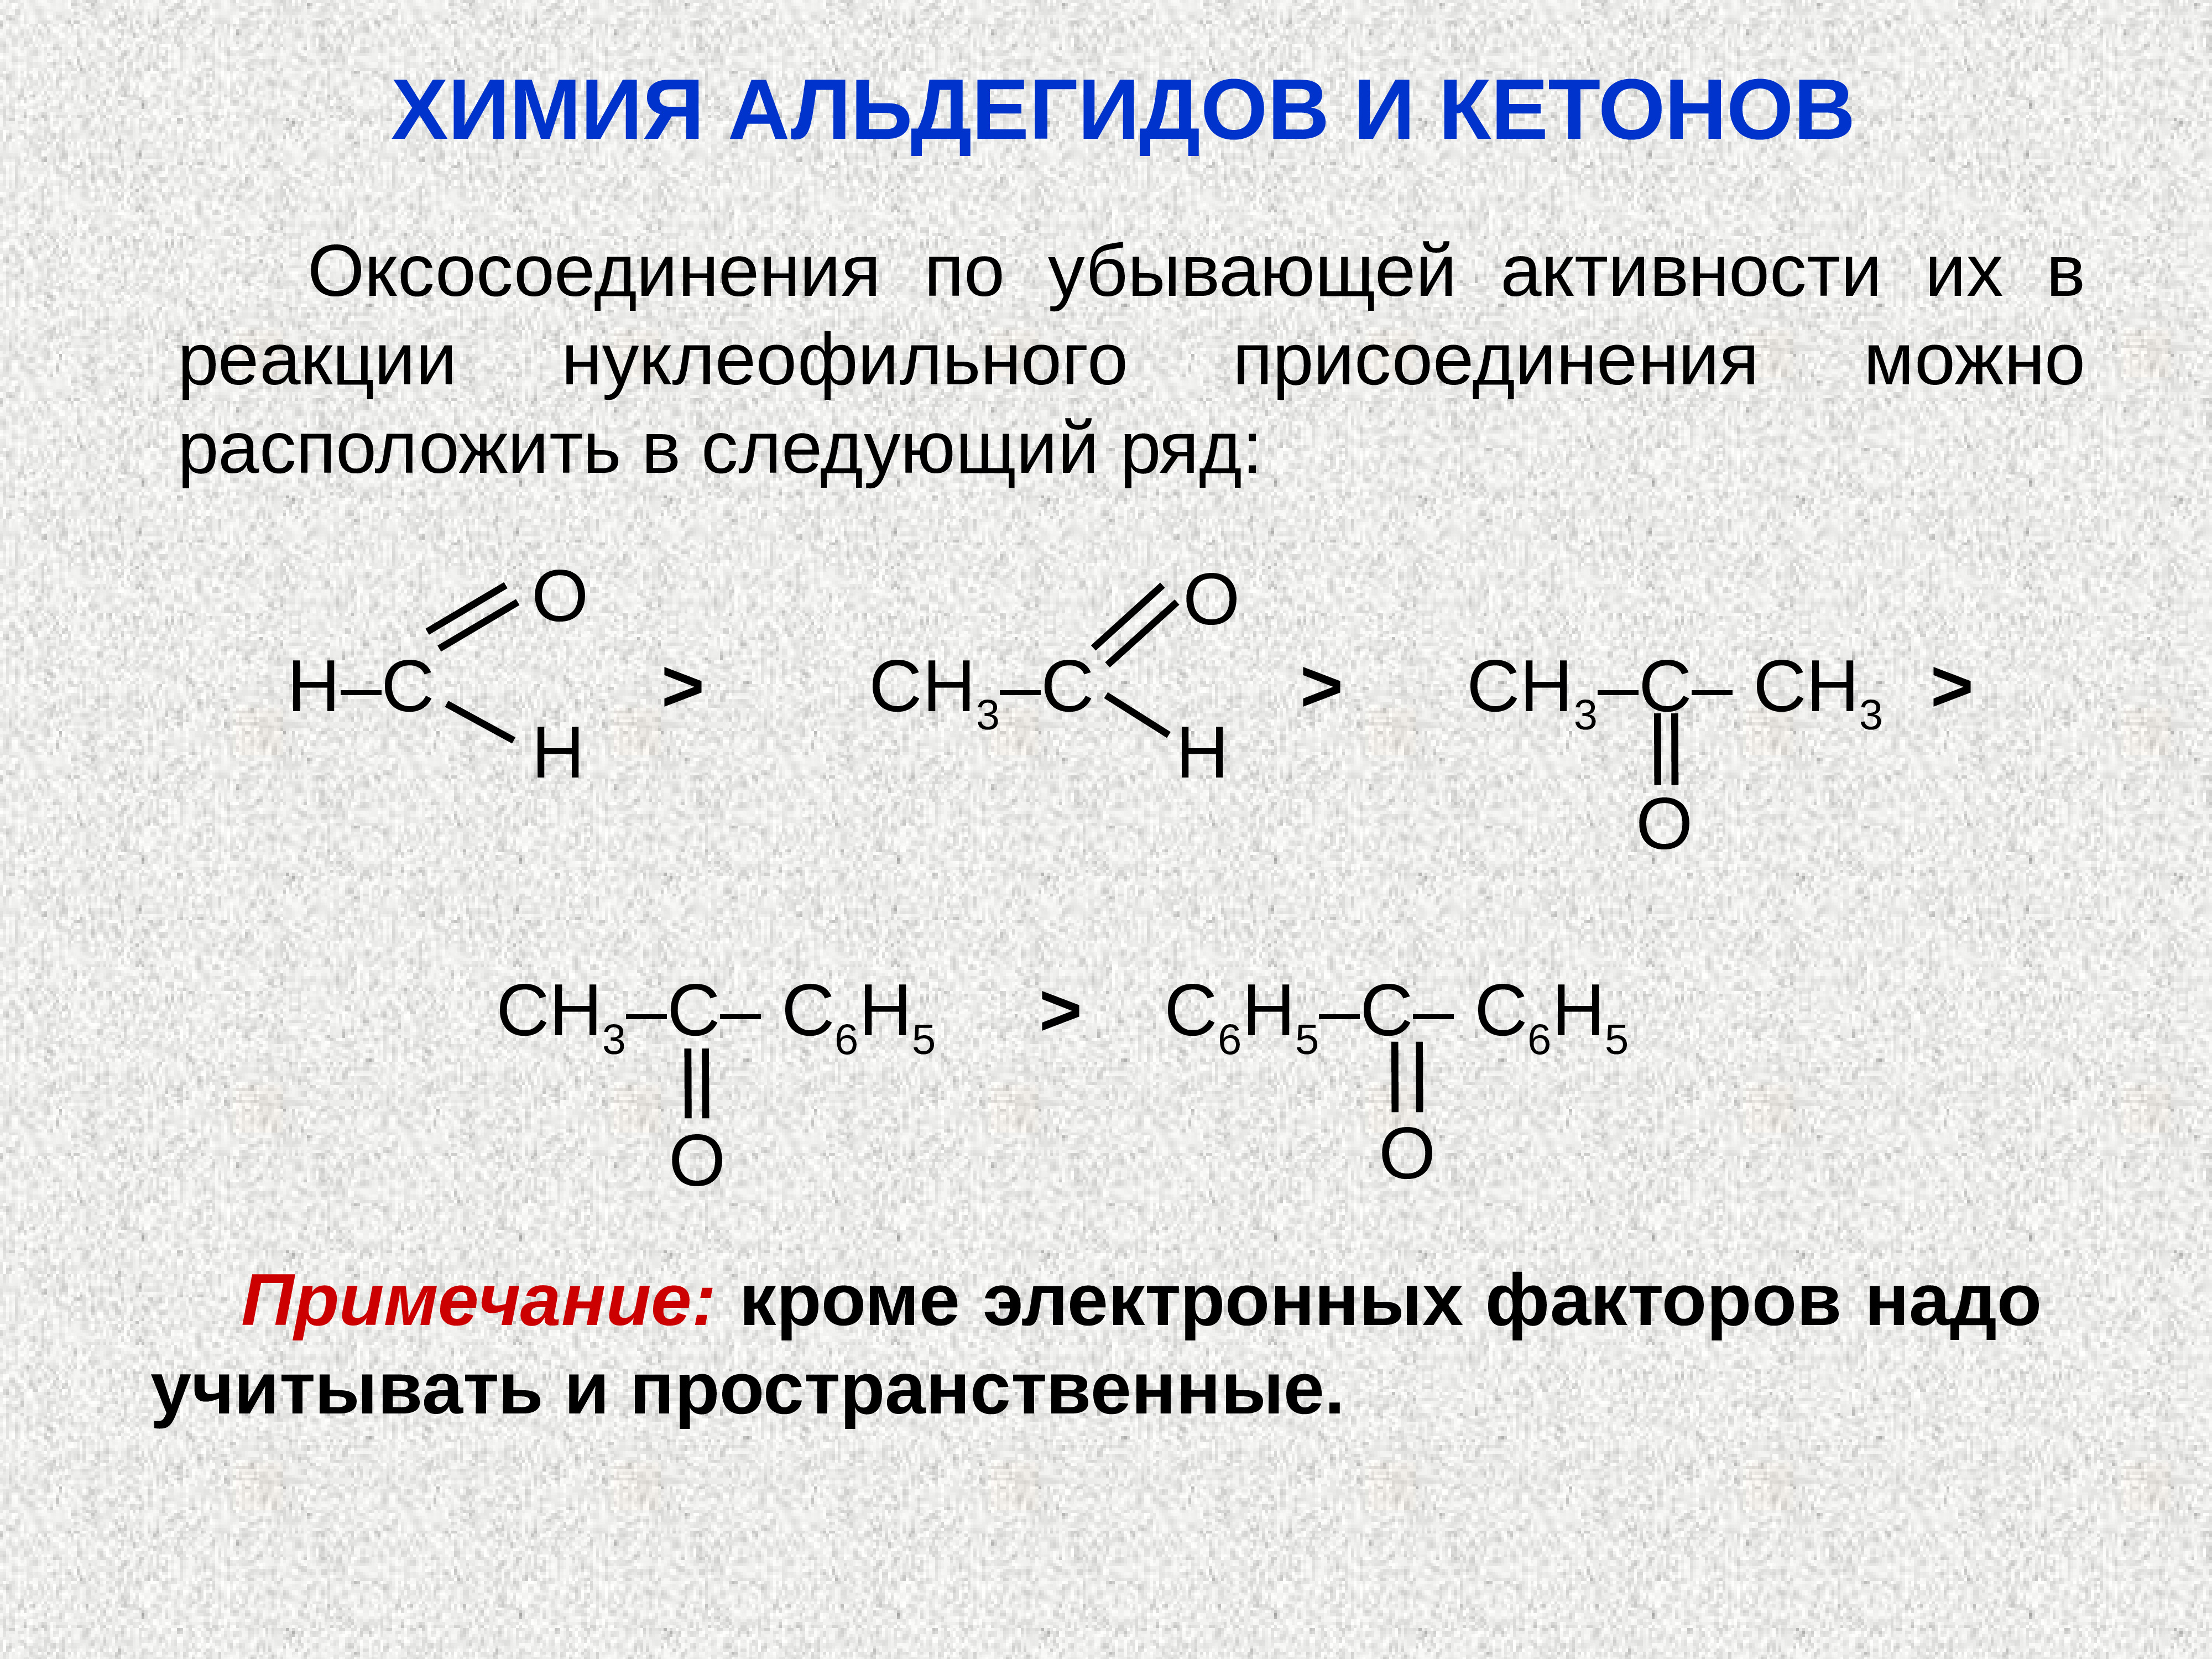 Оксосоединения. Реакция нуклеофильного присоединения альдегидов. Альдегиды и кетоны схема. Реакции нуклеофильного присоединения кетонов. Химические свойства альдегидов и кетонов схема.